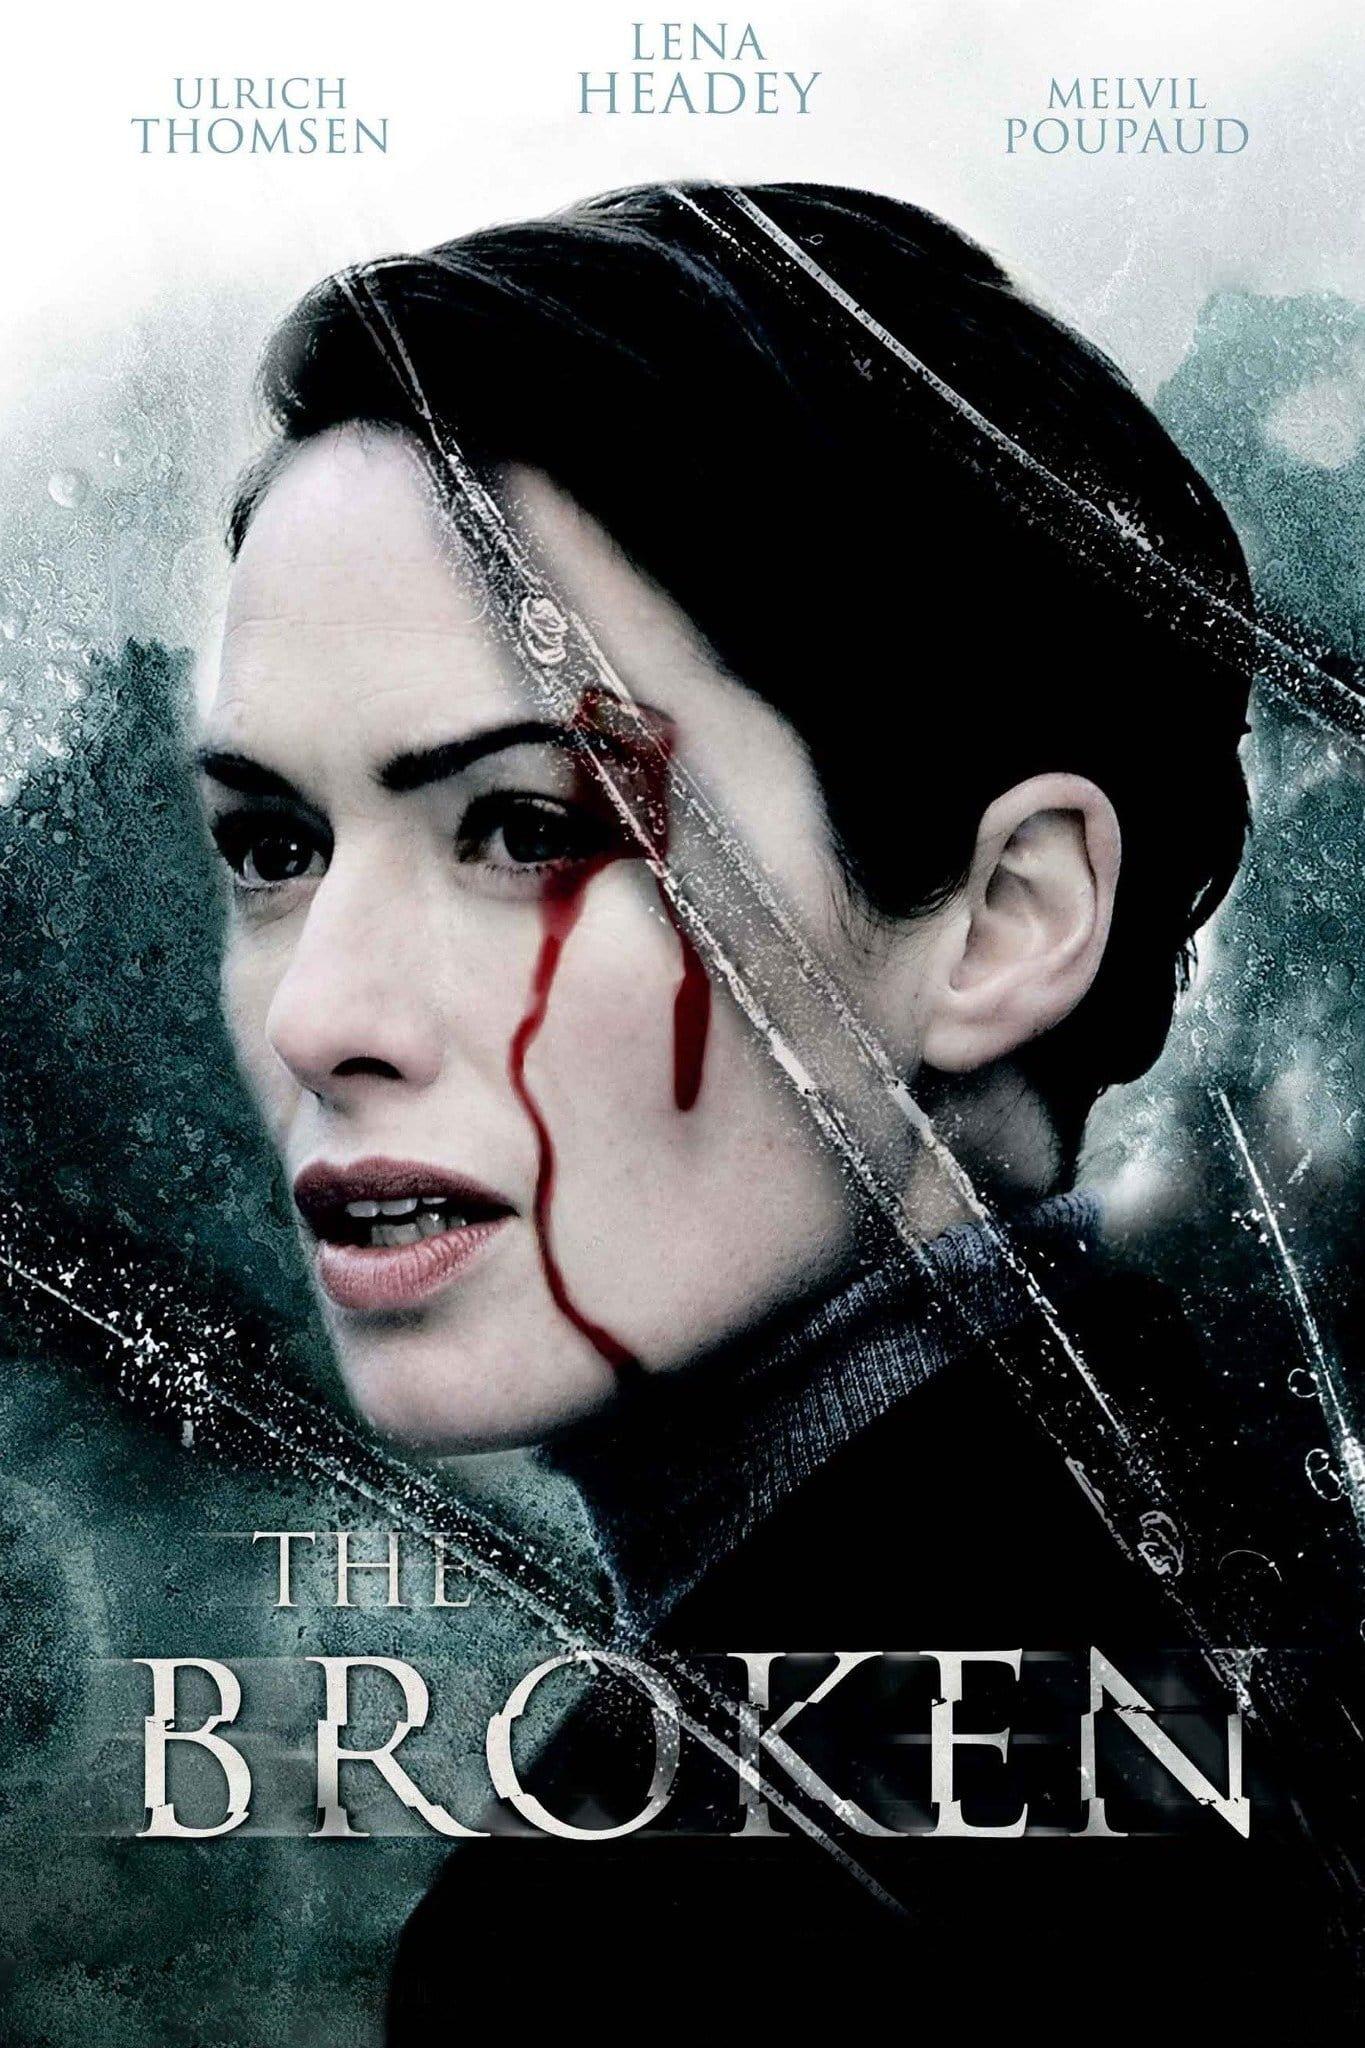 The Broken poster